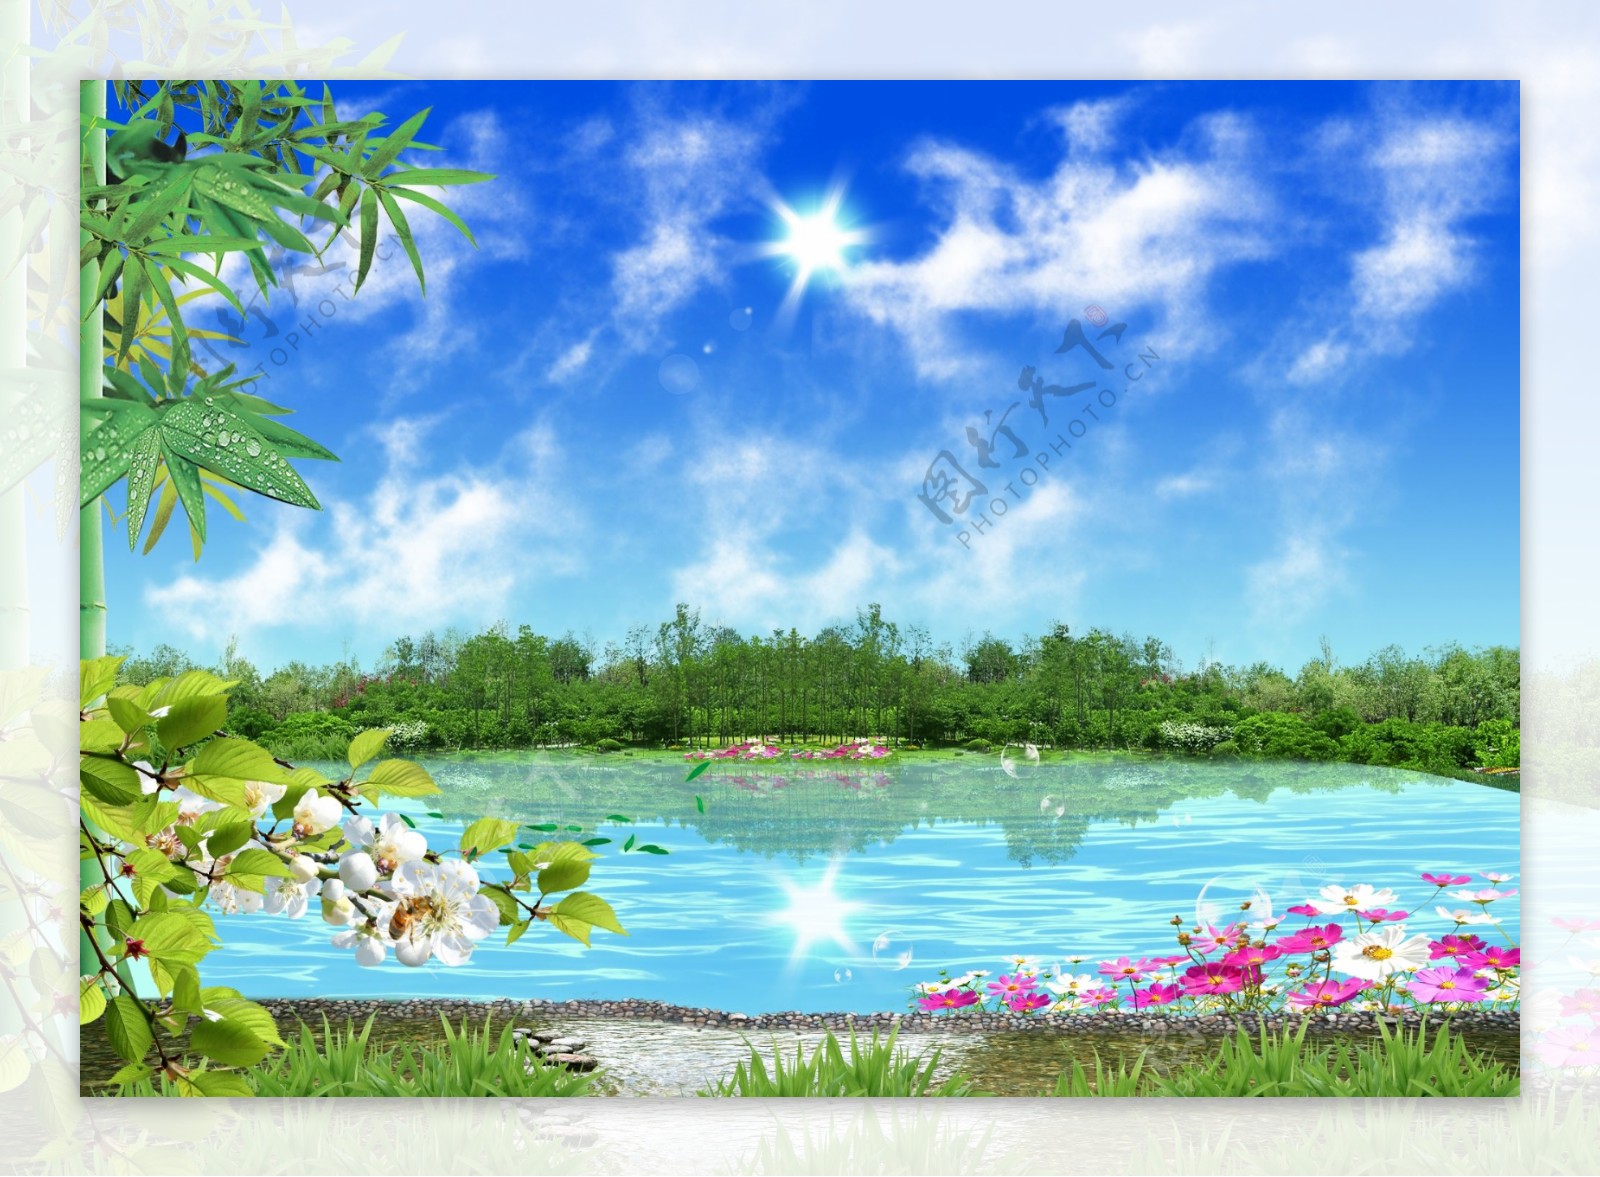 蓝天白云清澈的湖水竹子